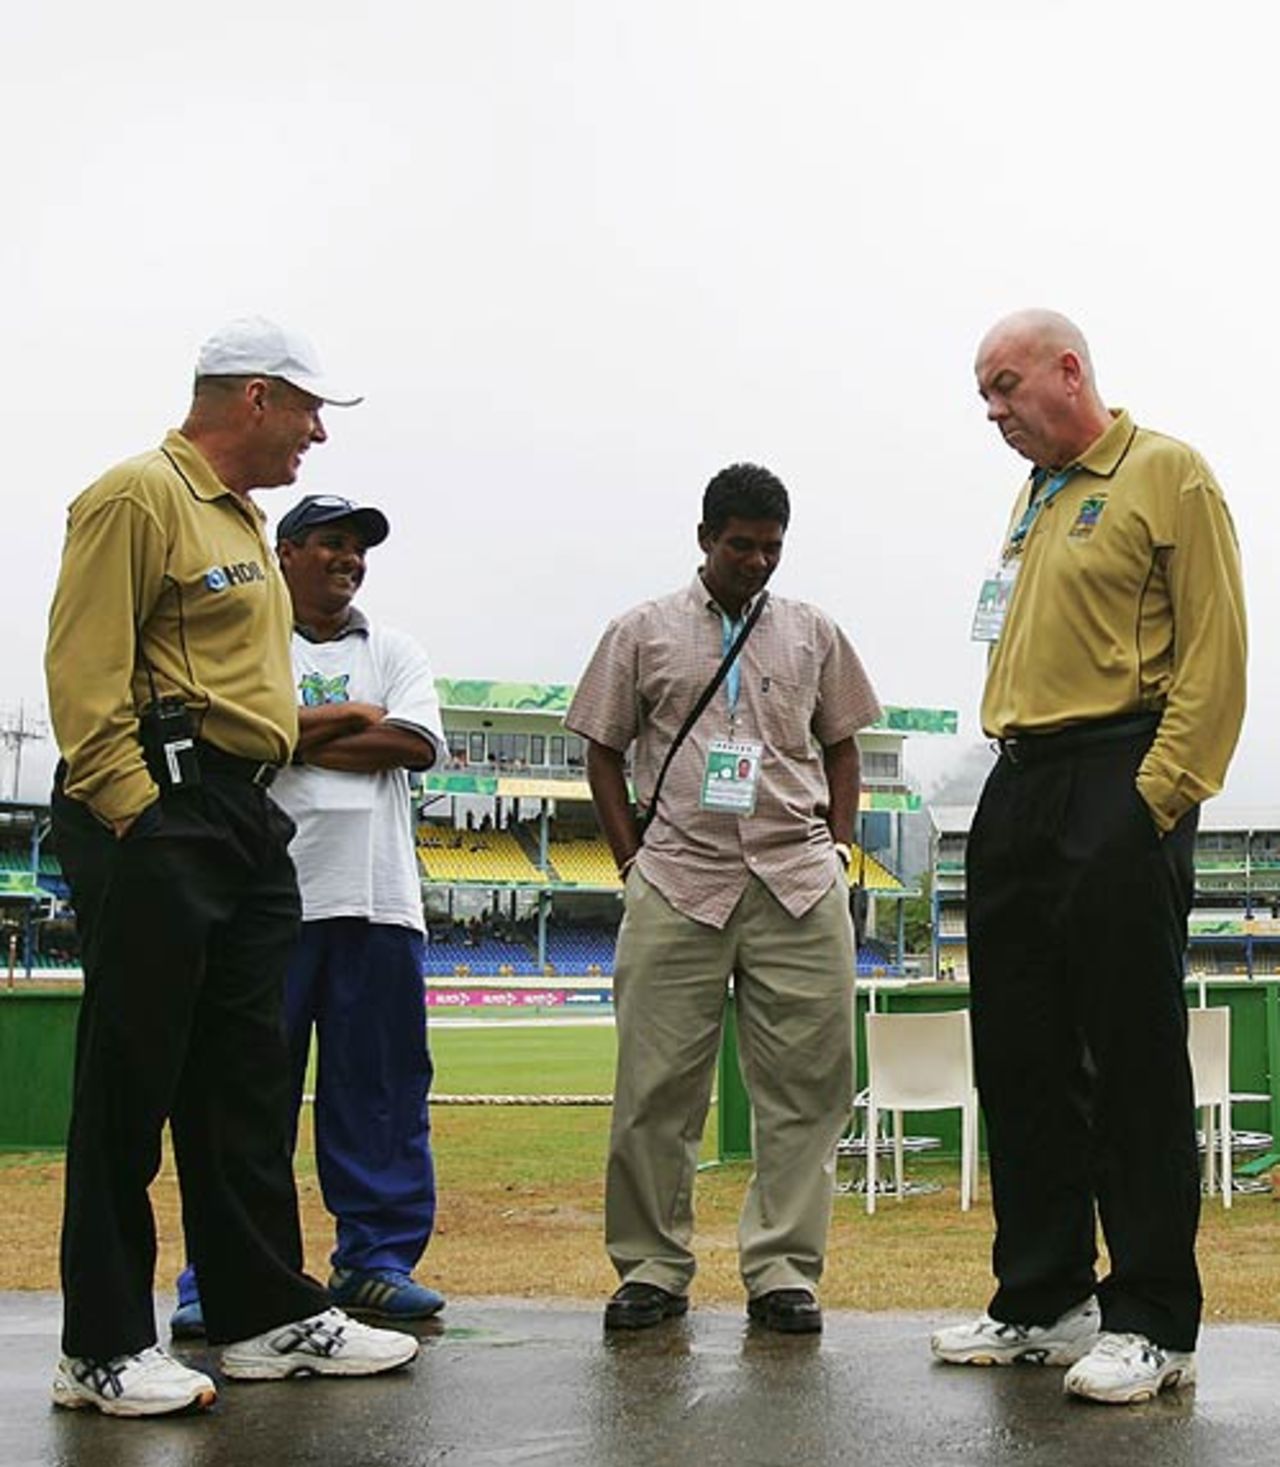 The umpires inspect the wet conditions in Trinidad, Bangladesh v Bermuda, Trinidad, March 25, 2007